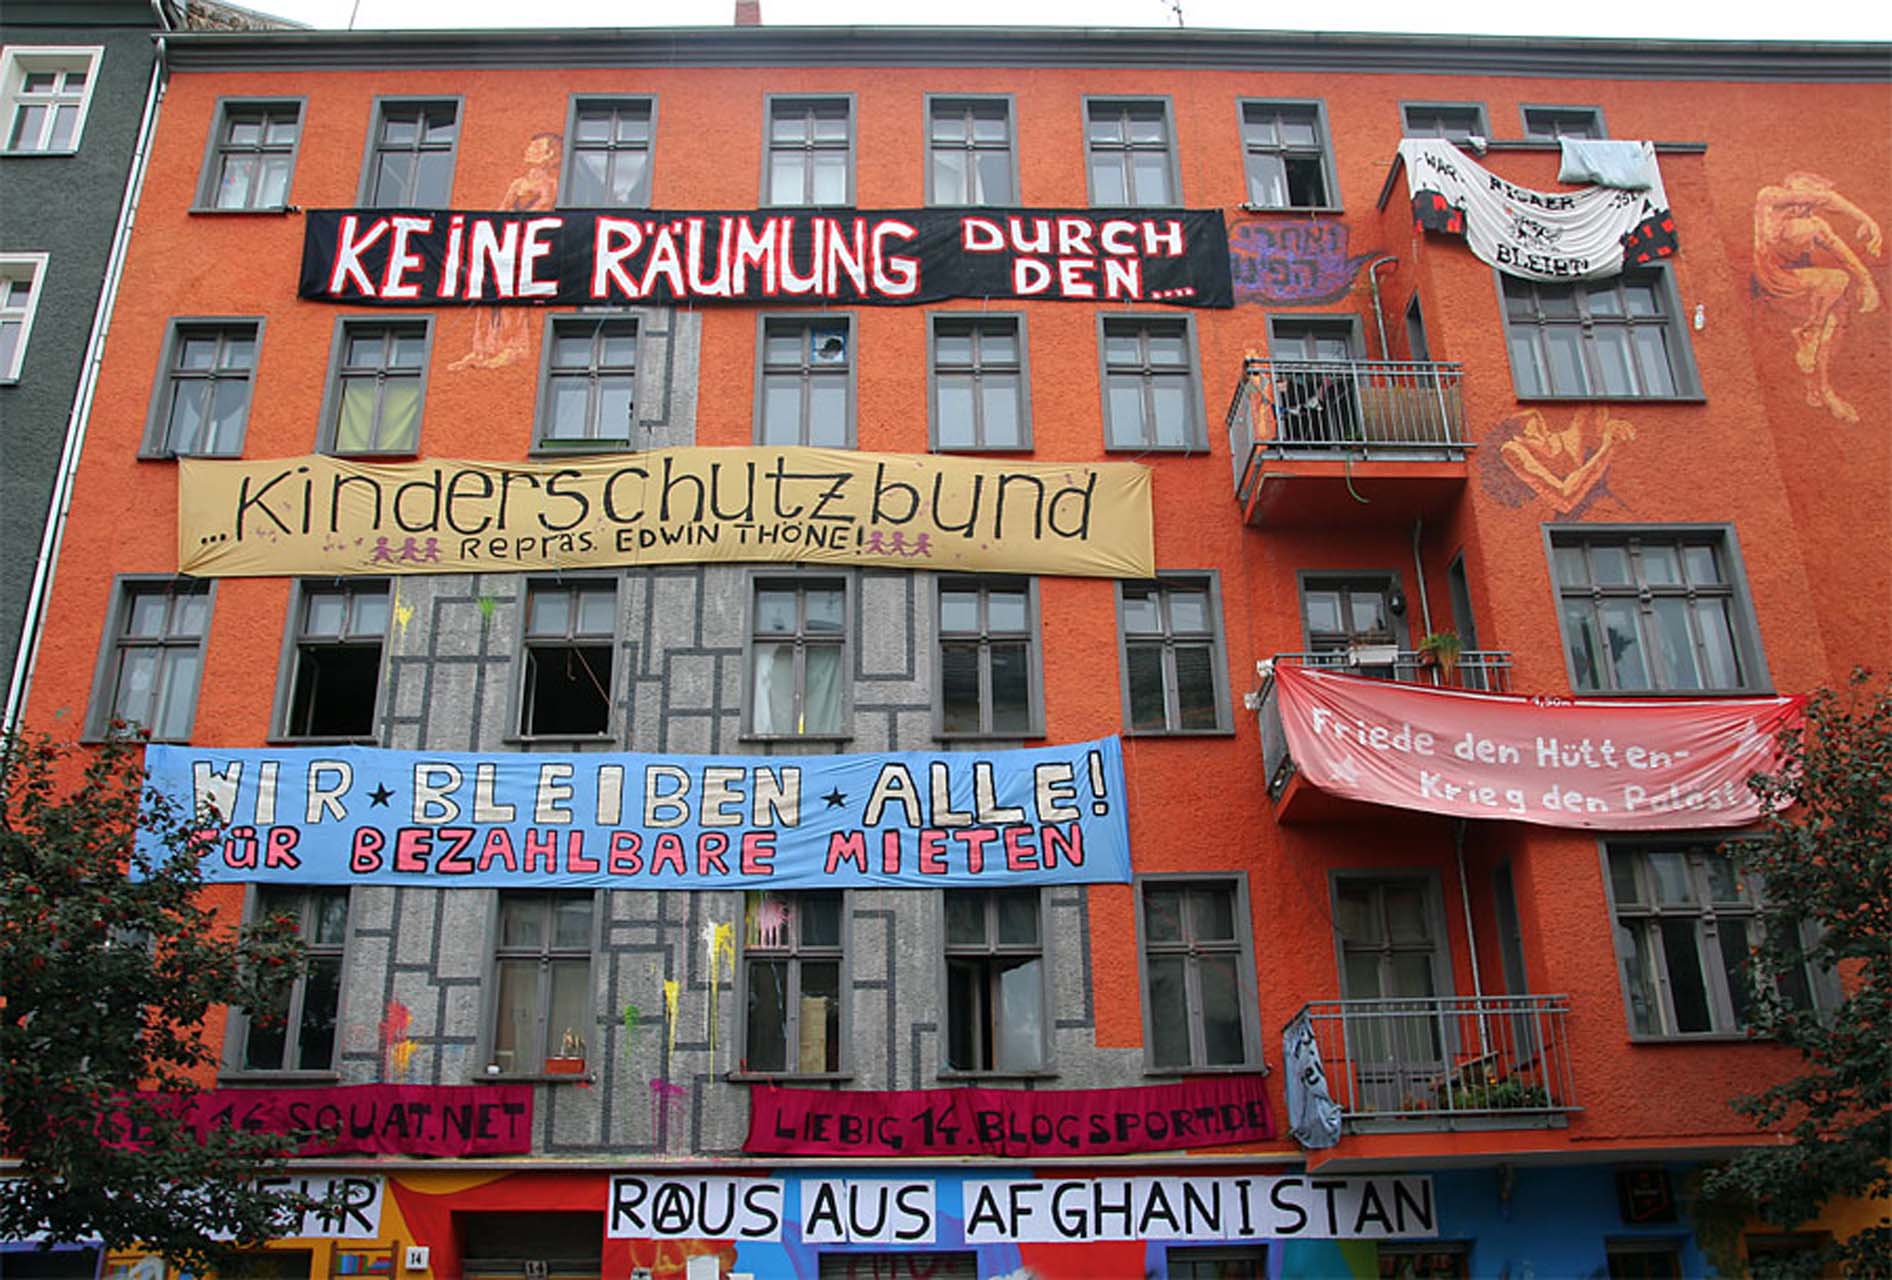 Liebigstraße 14 in Berlin Friedrichshain, 2009. Foto Wursti10247, verwendet unter Creative Commons Attribution-Share Alike 3.0